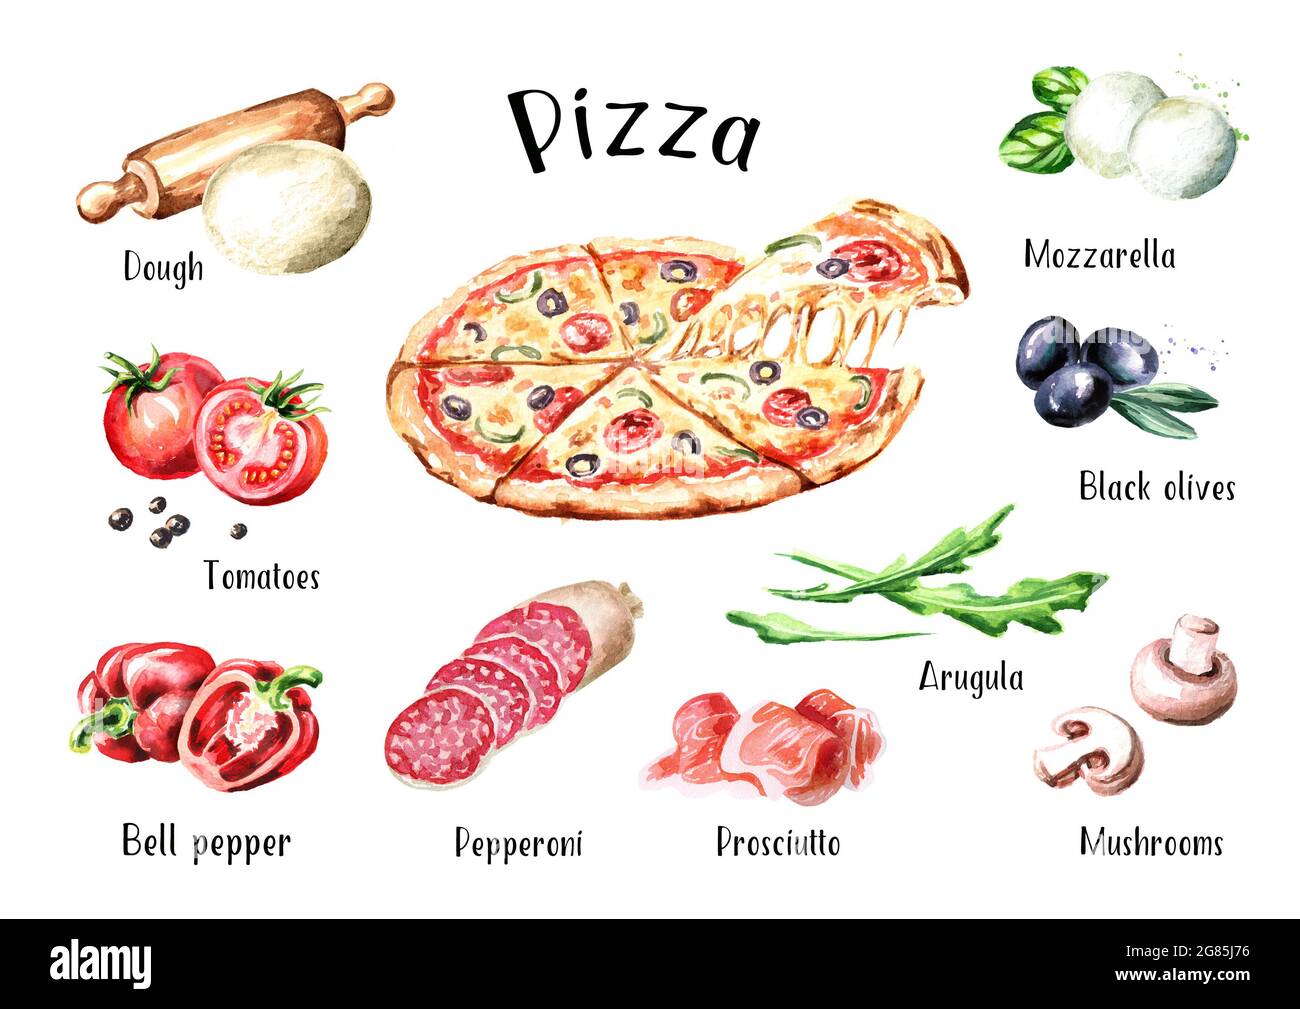 рецепт приготовления пиццы на английском языке 4 класс фото 24